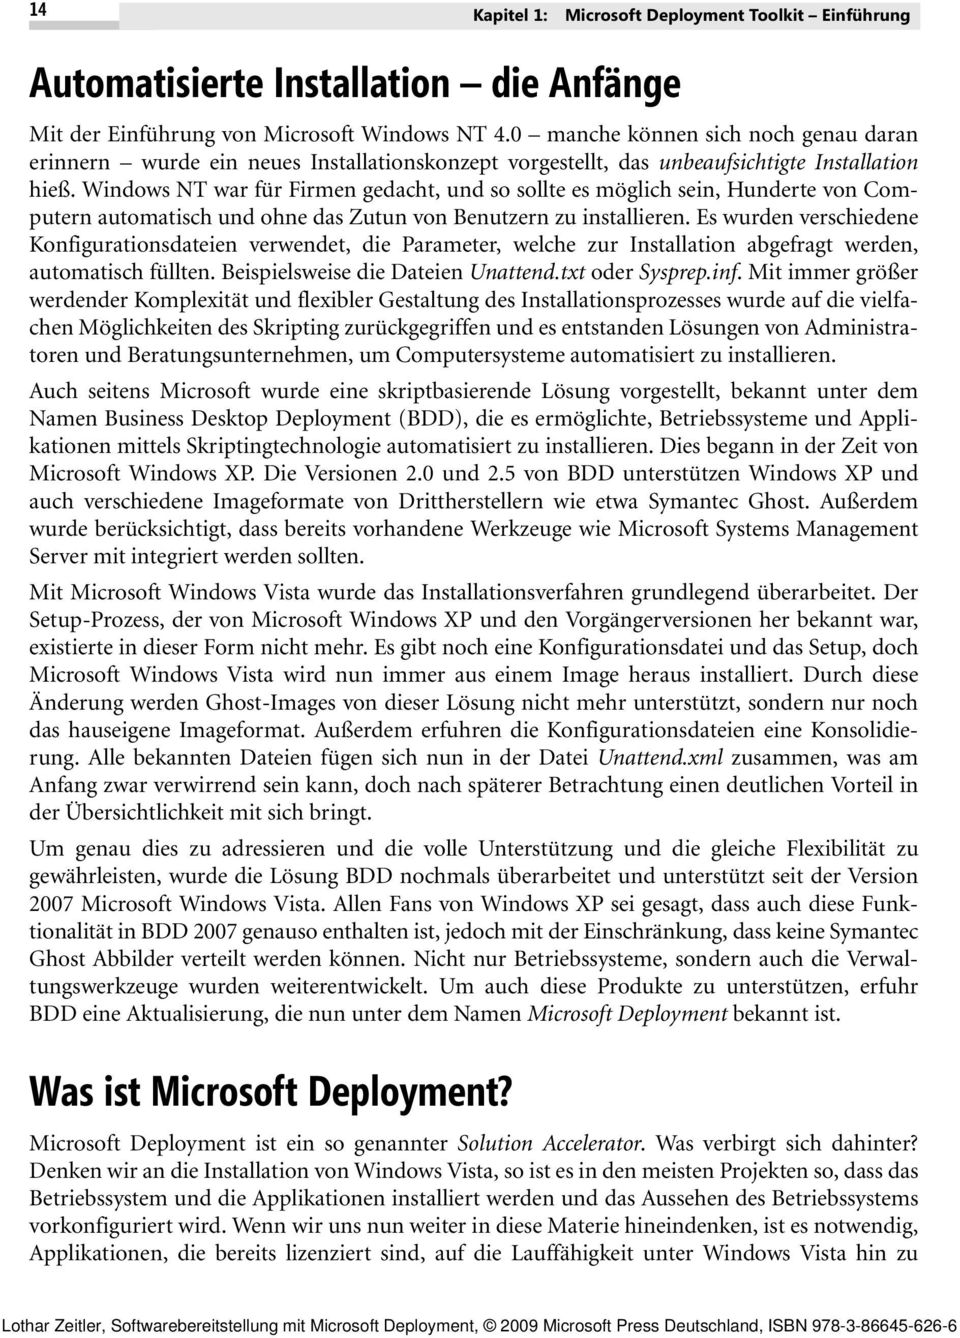 Windows NT war für Firmen gedacht, und so sollte es möglich sein, Hunderte von Computern automatisch und ohne das Zutun von Benutzern zu installieren.